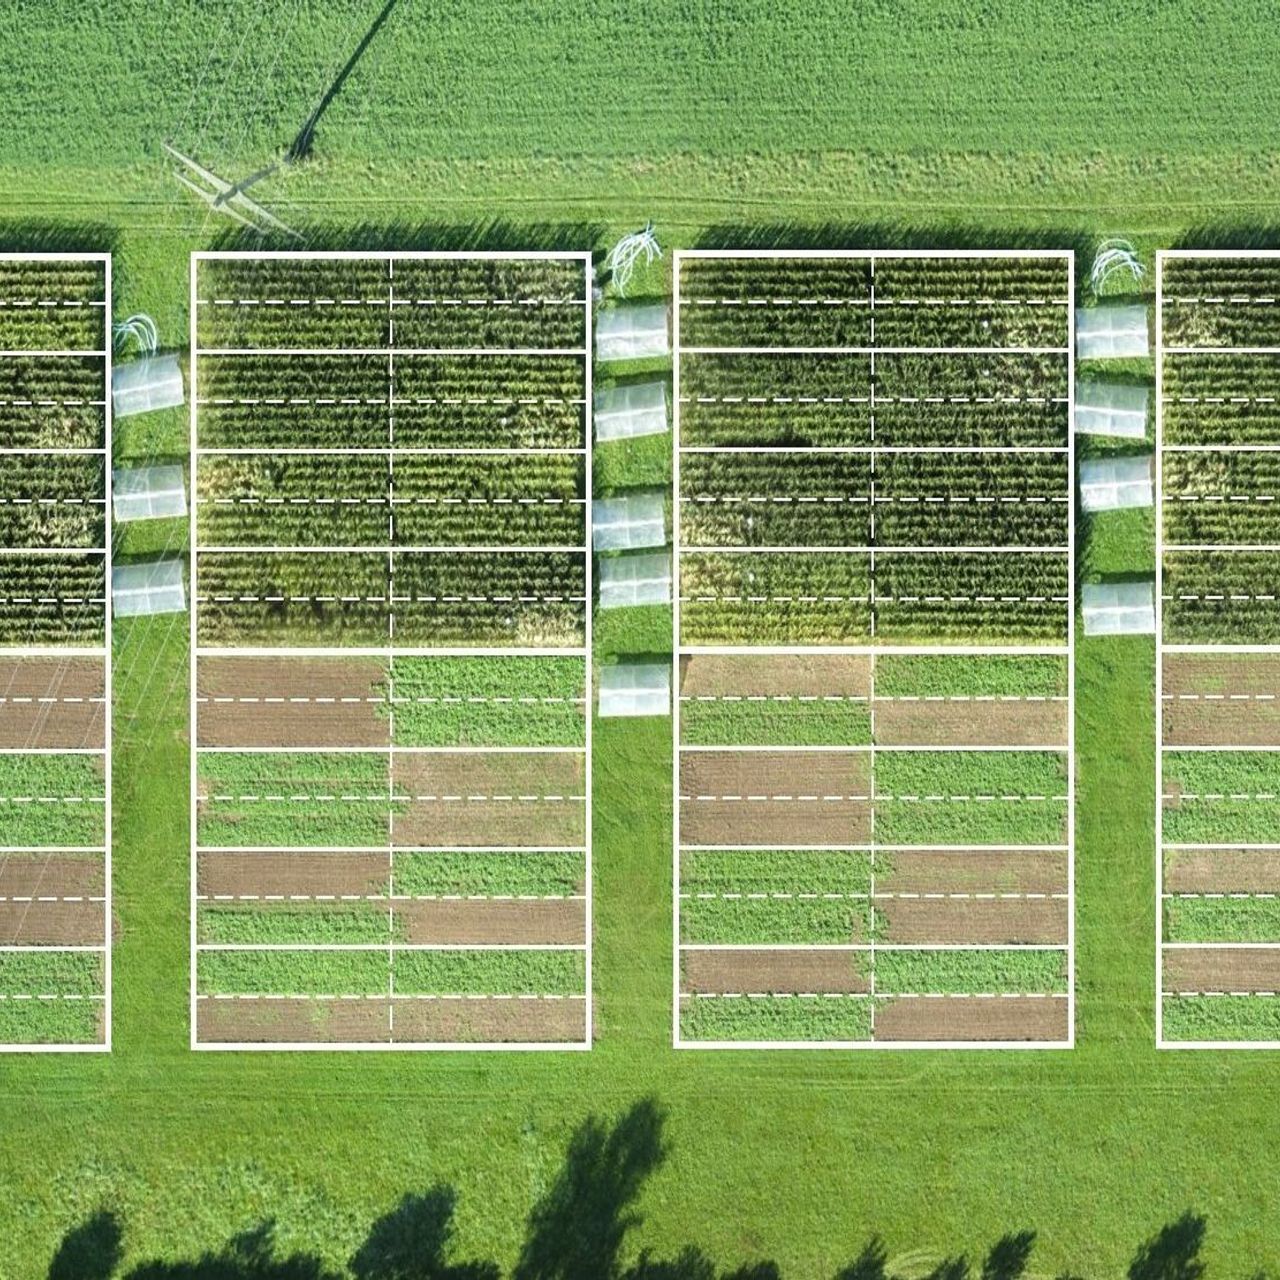 취리히에 있는 Agroscope 기관의 농업 시스템 및 경운 실험은 식물 수확량과 광범위한 생태계 서비스에 대한 유기농, 보존 및 재래식 경작 농업의 효과를 평가합니다. 스크린…